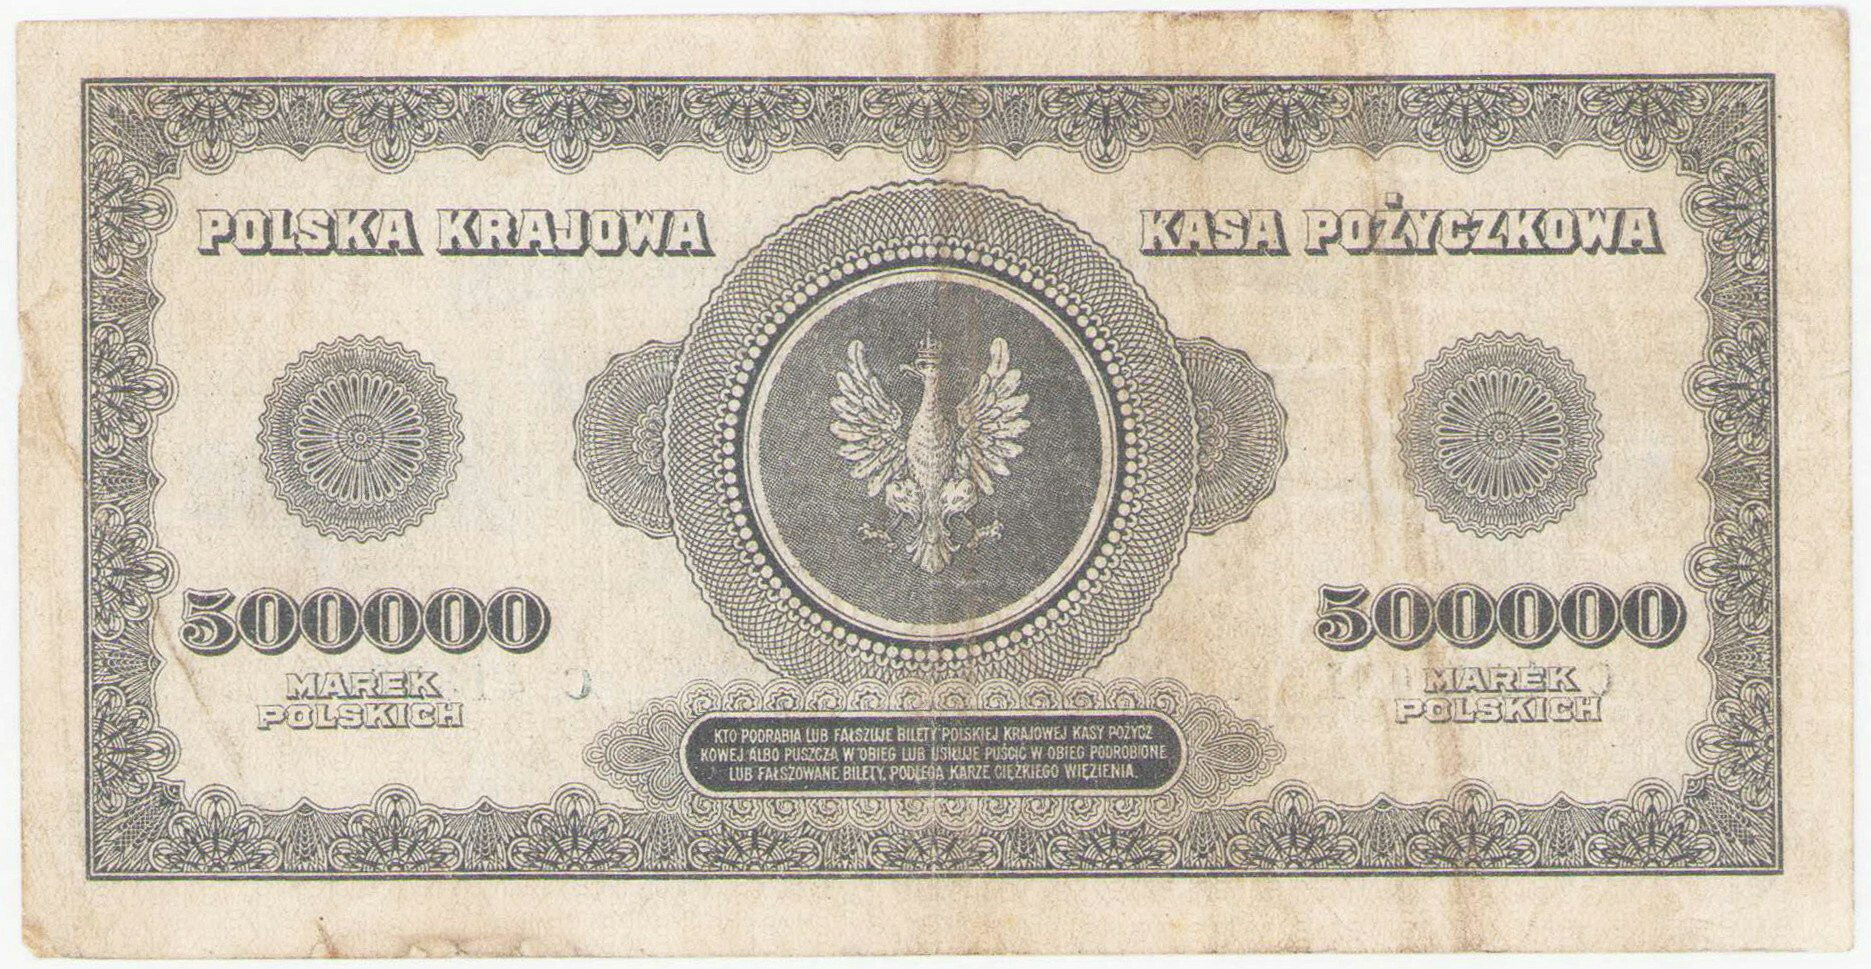  500.000 marek polskich 1923